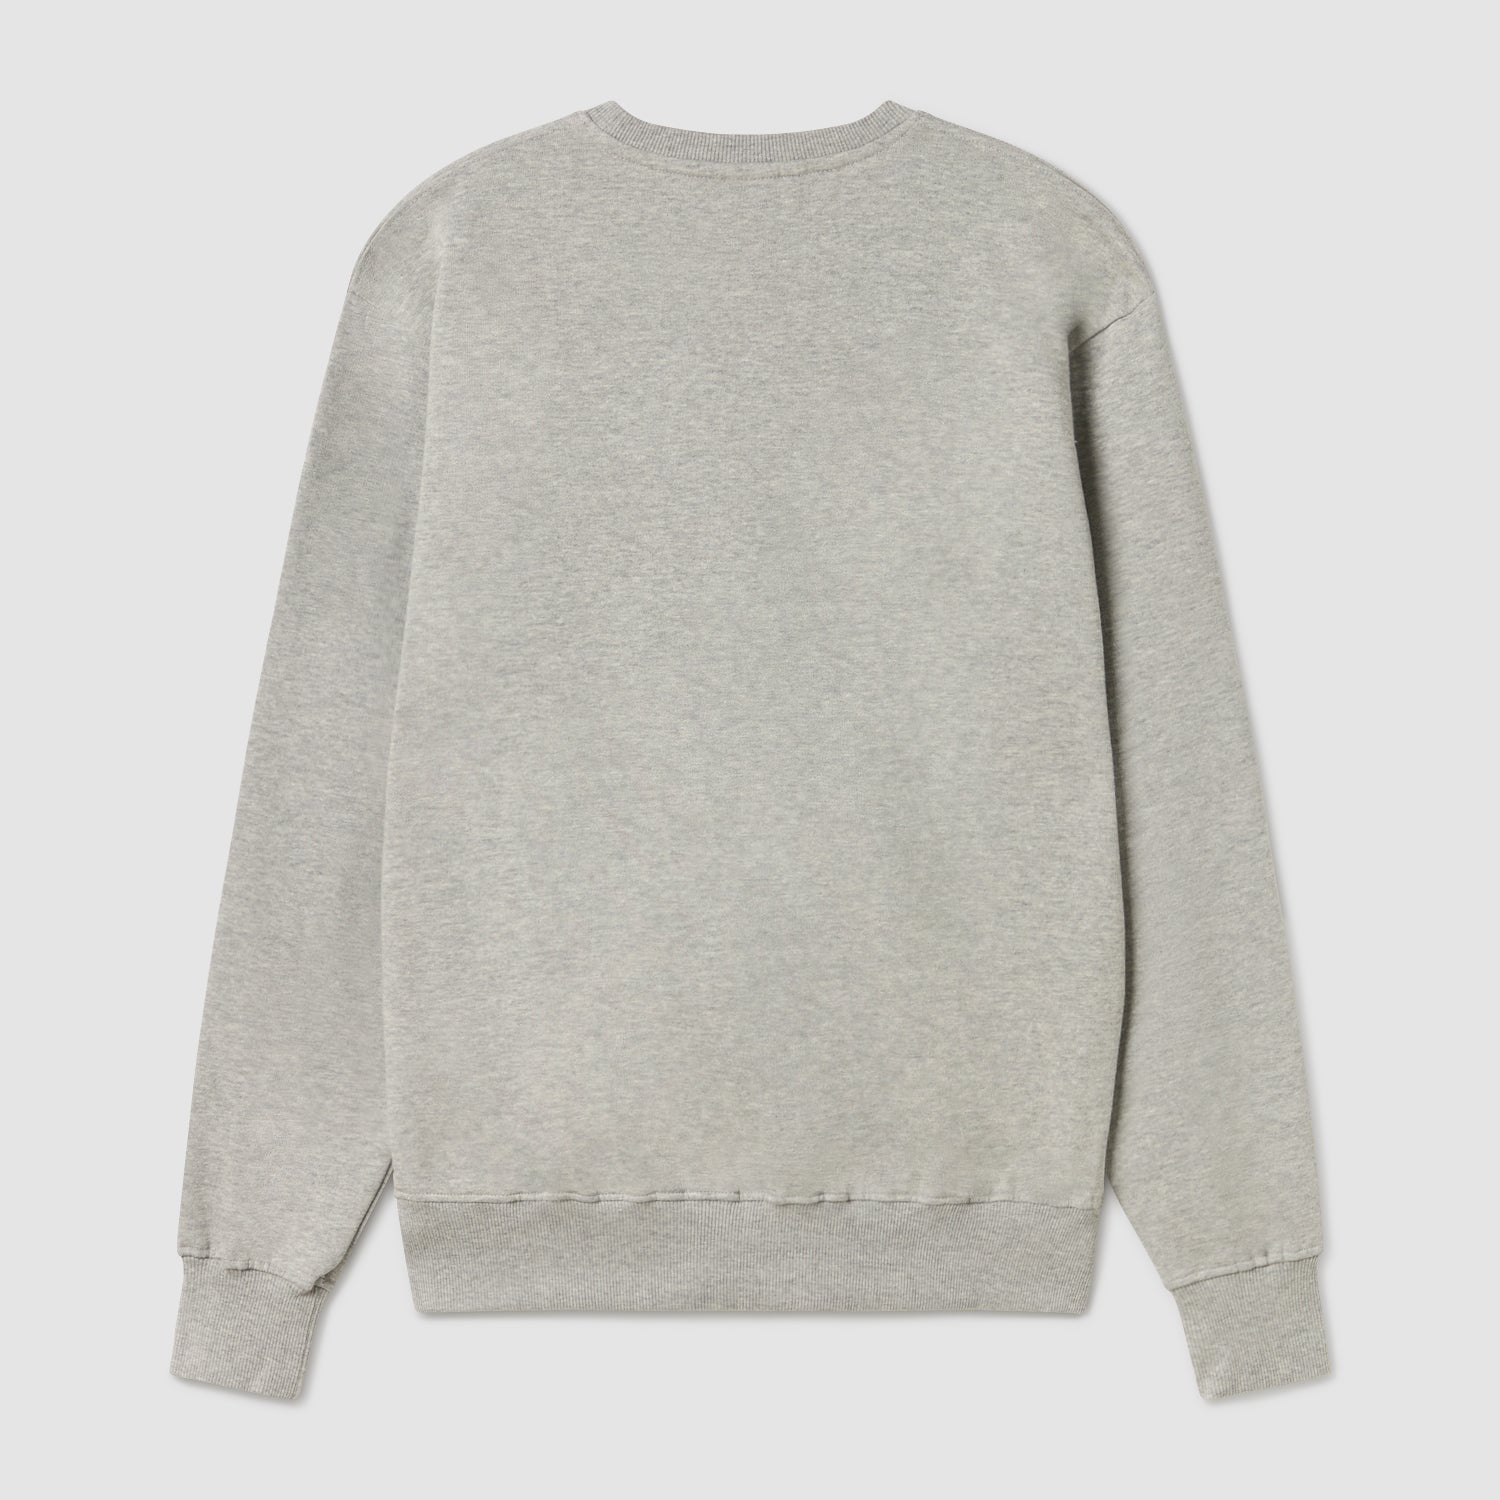 Basic Embroidered Sweatshirt